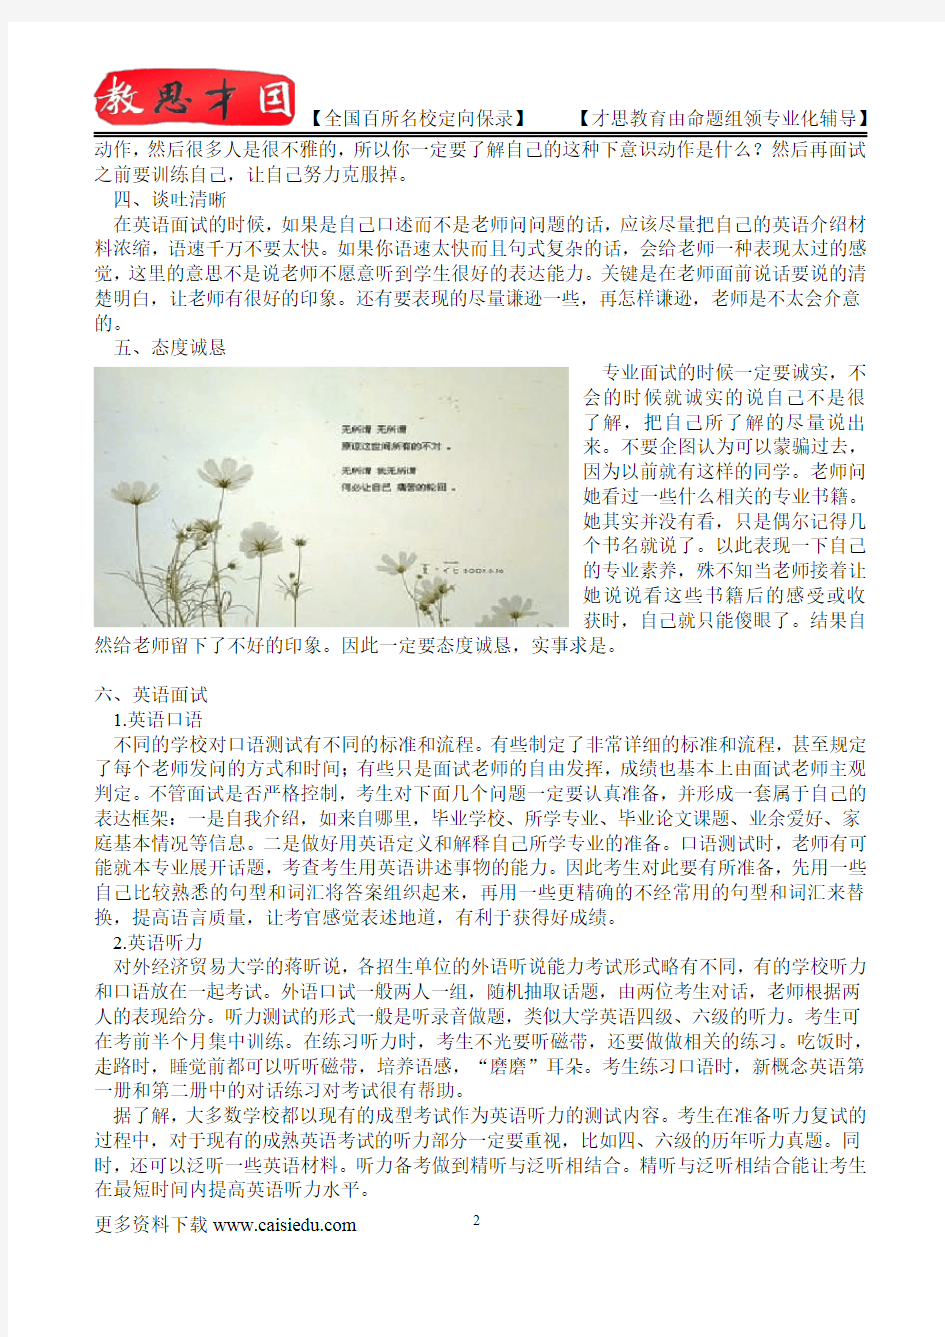 2015年北京大学景观设计学资料、复试真题,参考答案,考研参考书,复习方法,考研资料